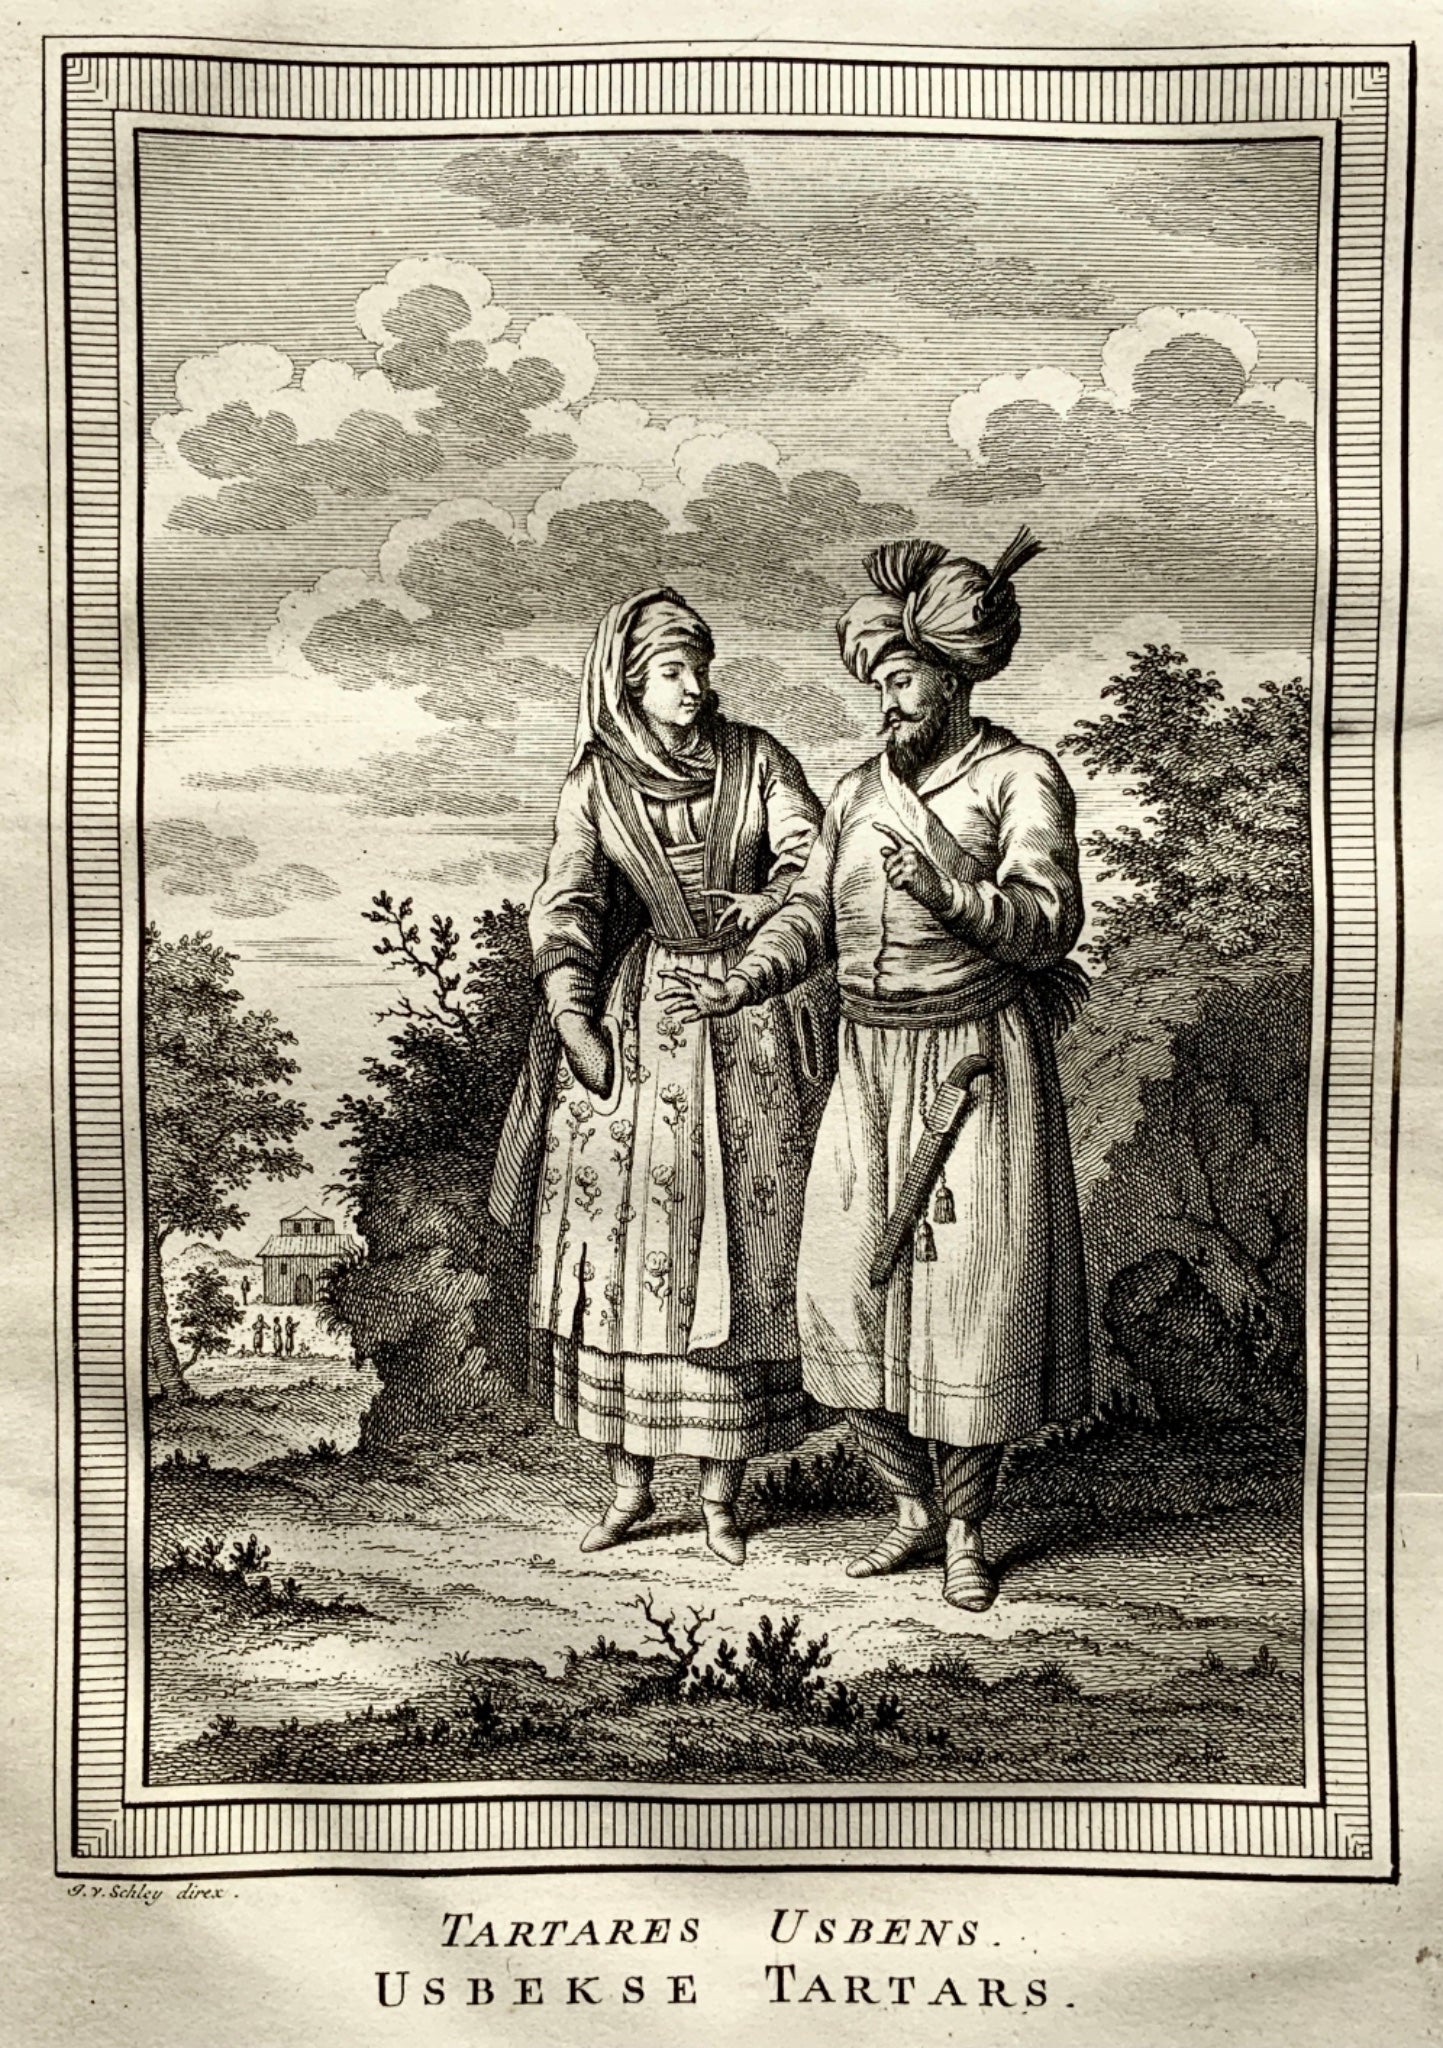 1772 Schley - 'Tartares Usbens'. Uzbekistan. Usbek Tartars. engraving - Travel